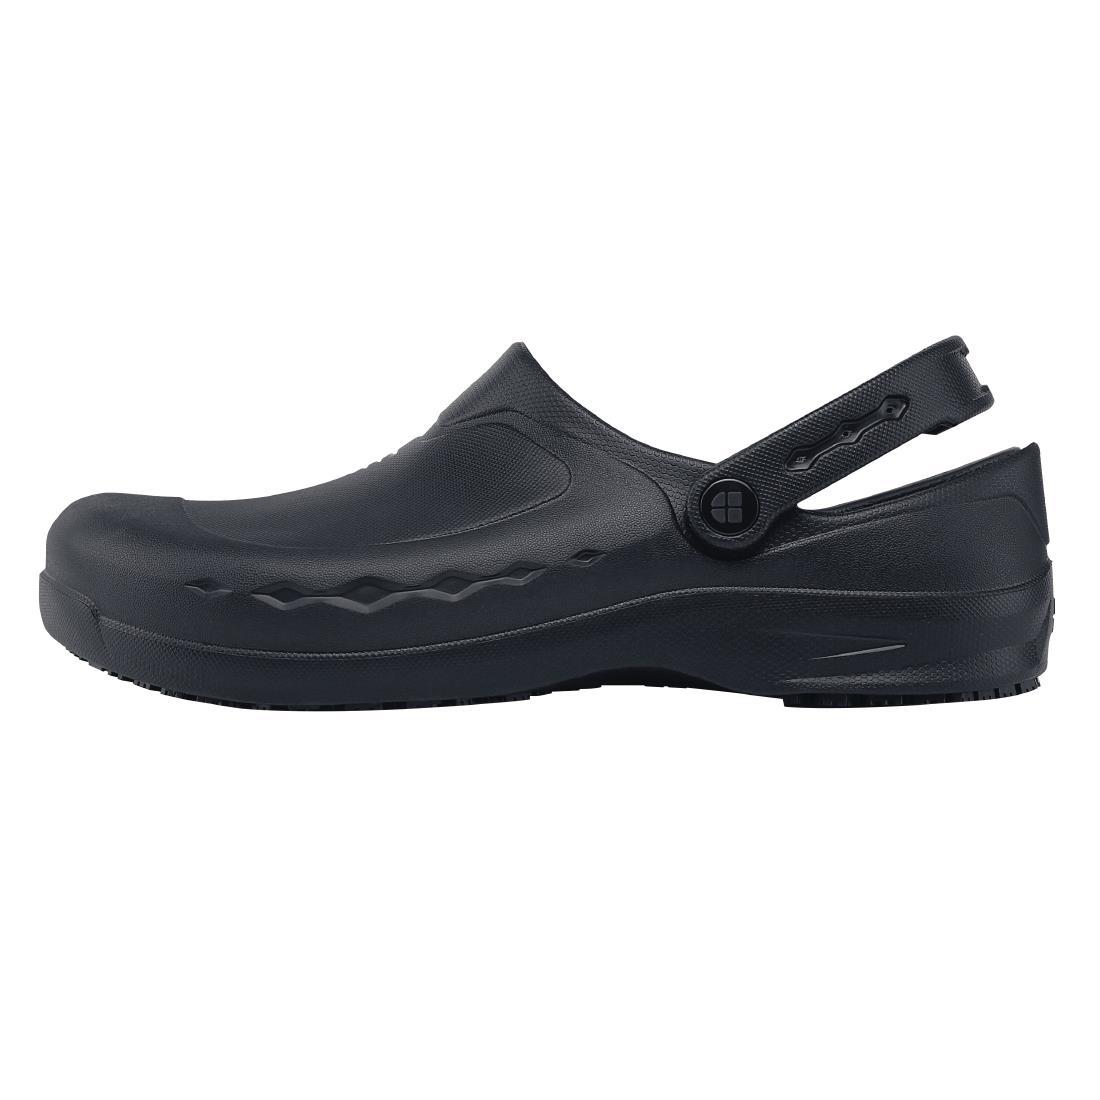 Shoes for Crews Zinc Clogs Black Size 38 - BB569-38  - 1